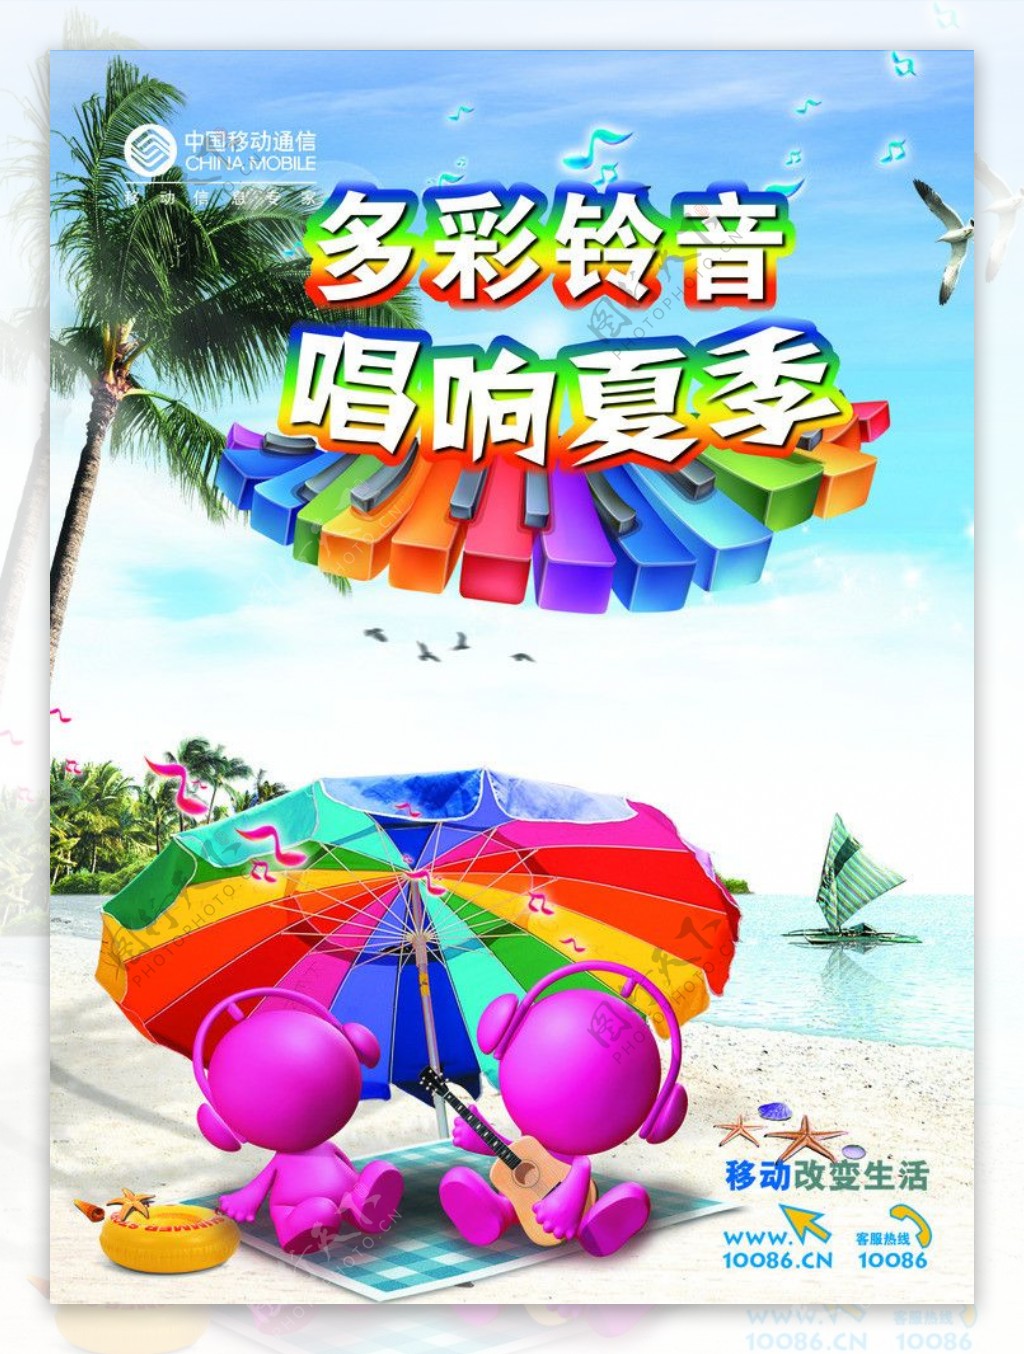 中国移动彩铃宣传图片